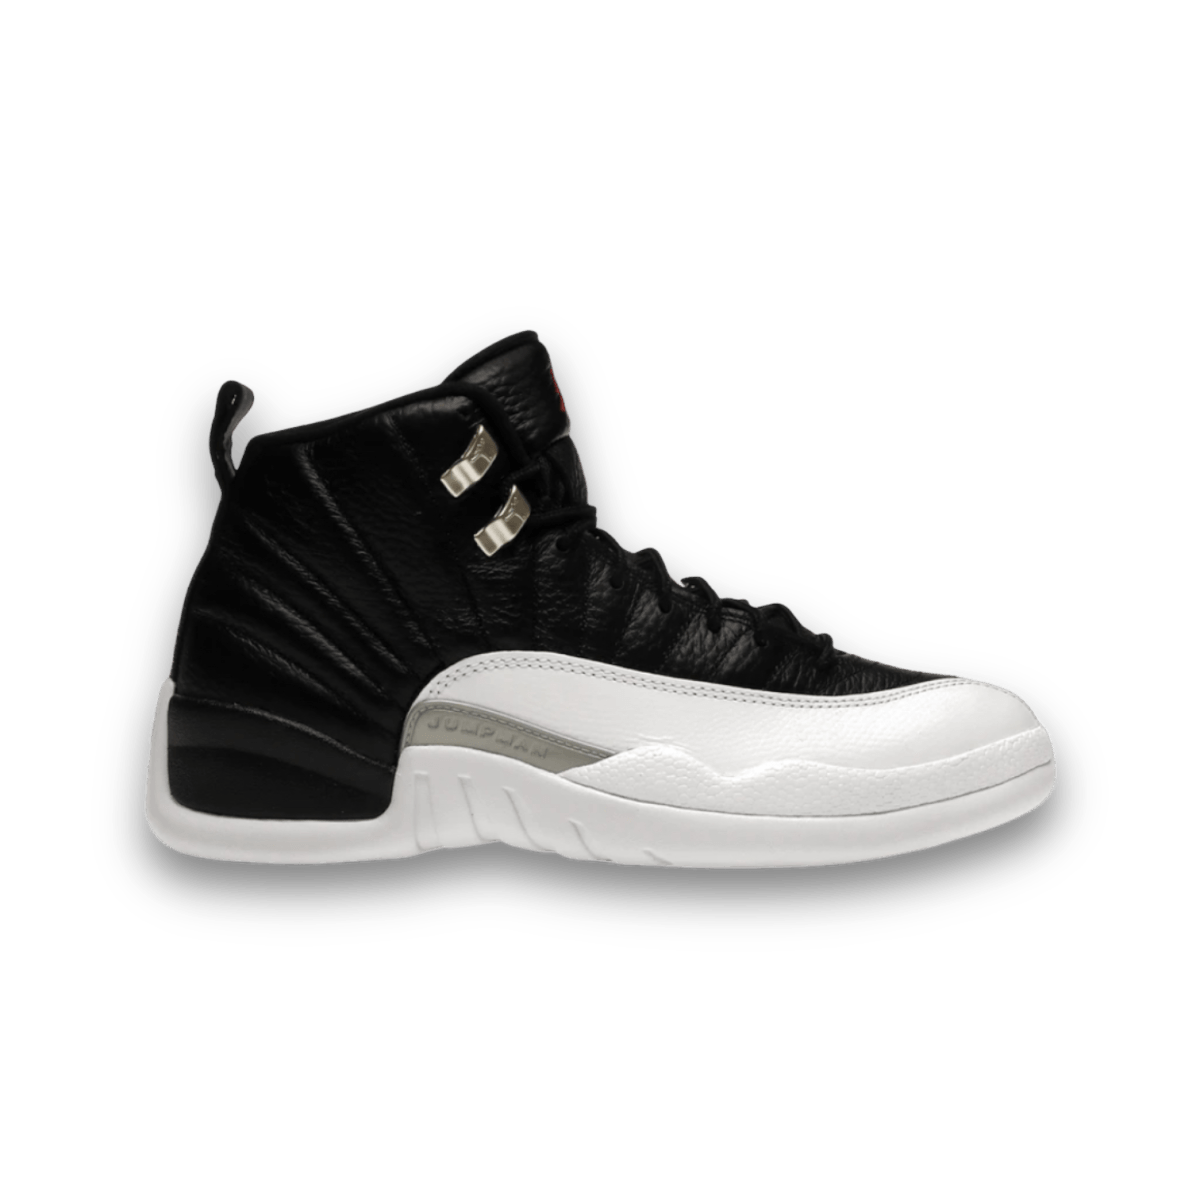 Jordan 12 Retro Playoffs - Grade School - Mid Sneaker - Jawns on Fire Sneakers & Streetwear